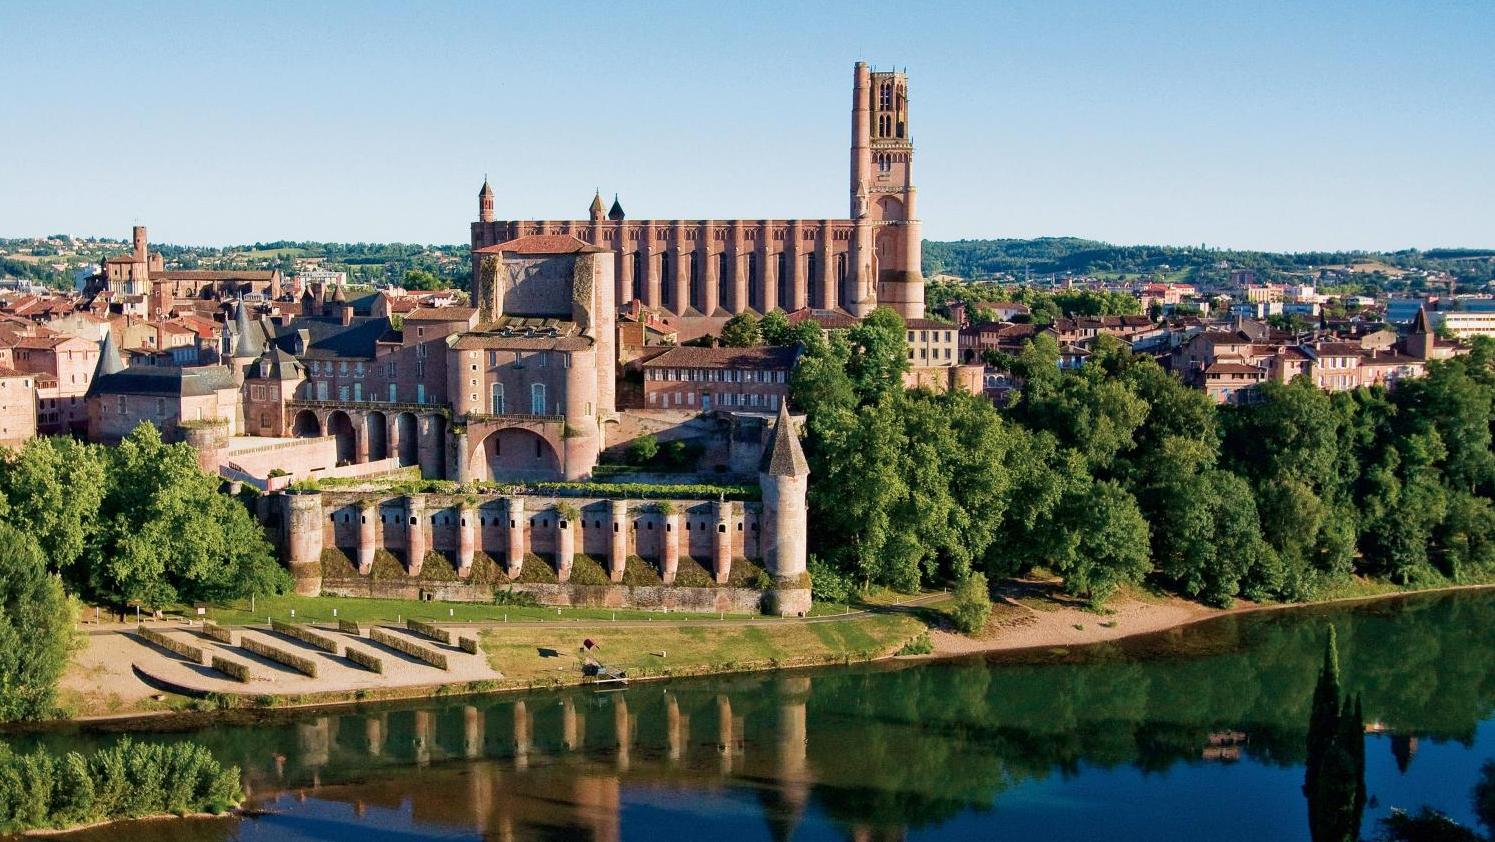 La cité épiscopale d’Albi, érigée à l’époque médiévale, est classée depuis 2010. L’Unesco quels sont les enjeux d'une inscription à son patrimoine ?